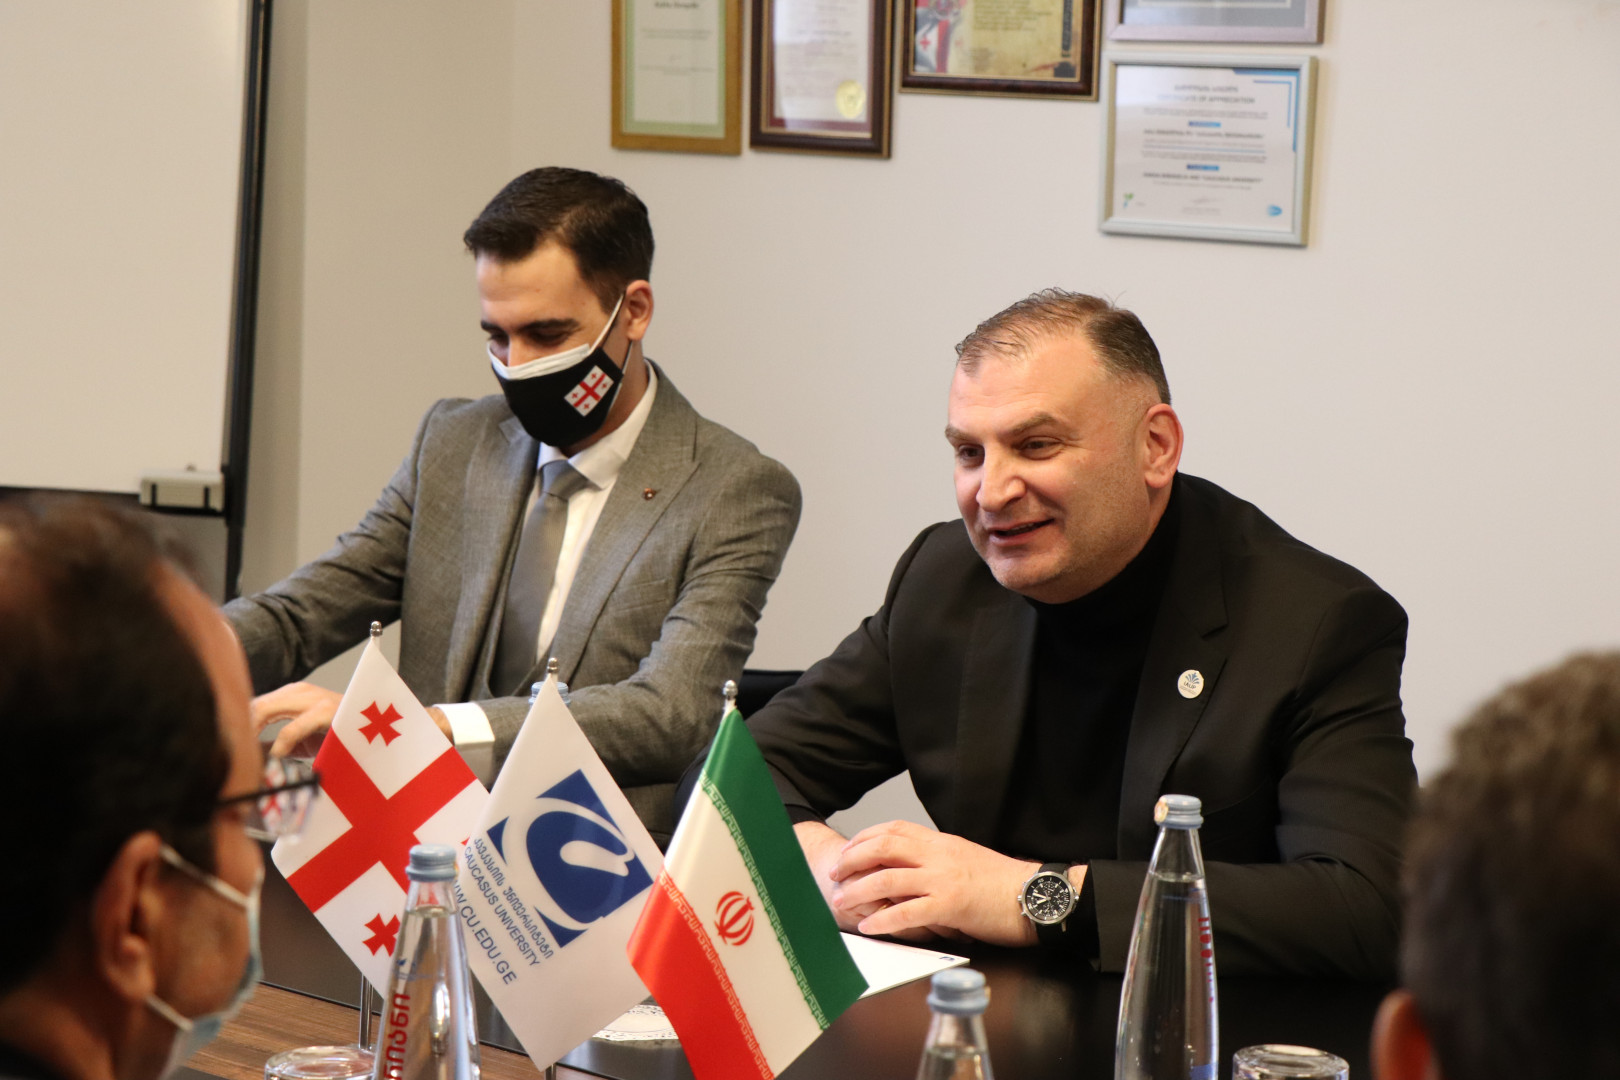  საქართველოში ირანის ისლამური რესპუბლიკის ახალი ელჩის პირველი სამეცნიერო ვიზიტი კავკასიის უნივერსიტეტში